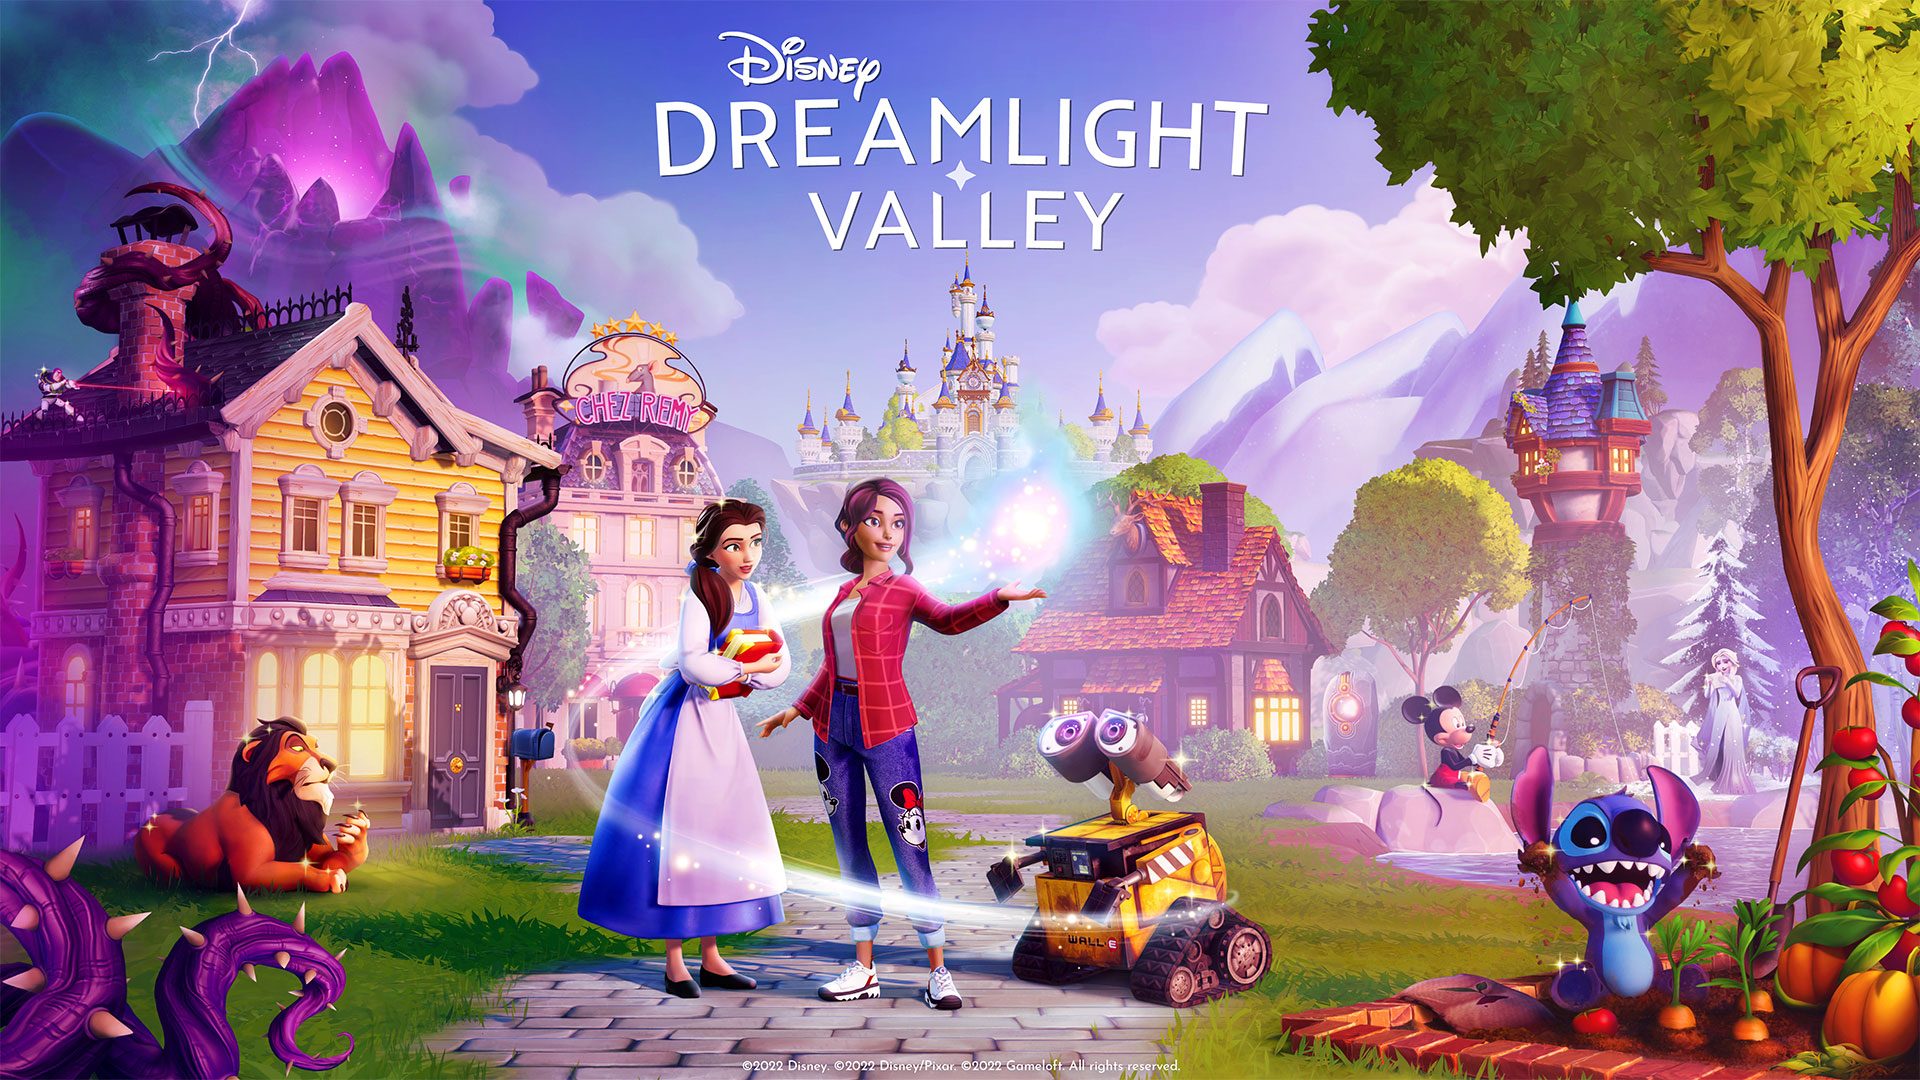 Le monde magique GAMES Edition JUST Cozy et le dans de Switch une Disney Valley 2023 FOR octobre 27 physique sur Xbox Dreamlight Playstation, arrive 